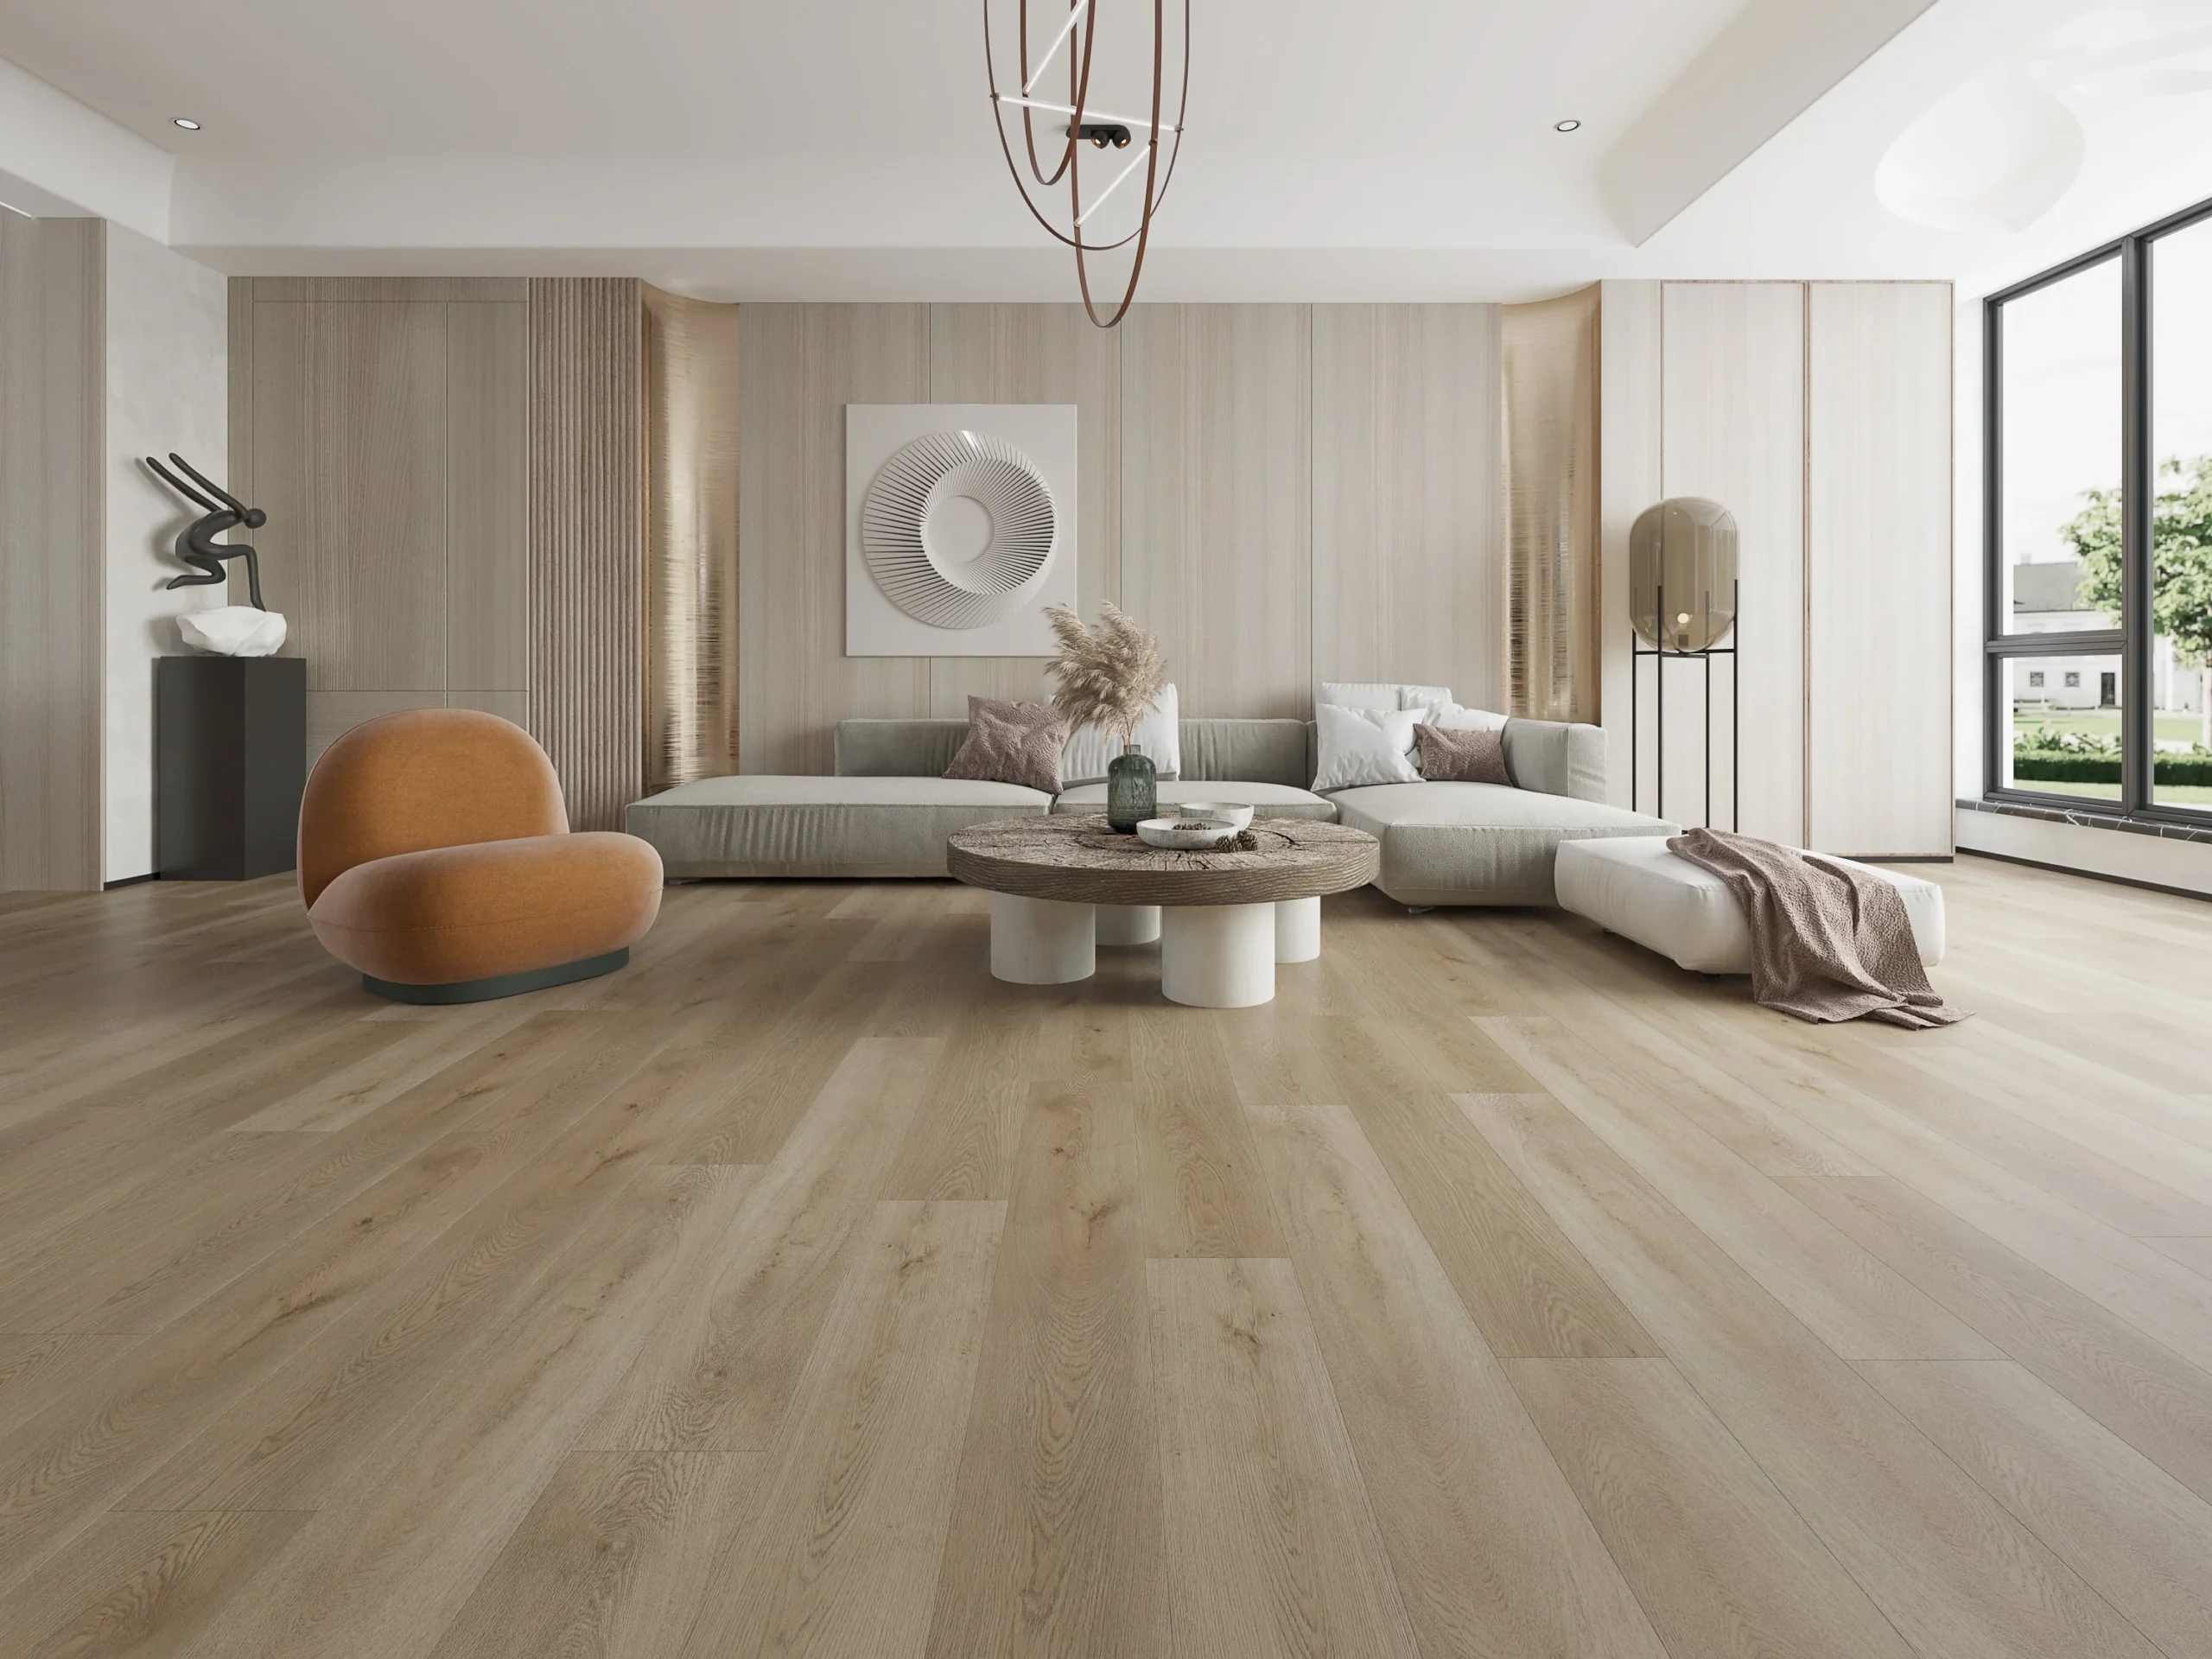 oak hardwood flooring,<br />
oak hardwood flooring wide plank,<br />
oak hardwood flooring company,<br />
oak hardwood flooring companies